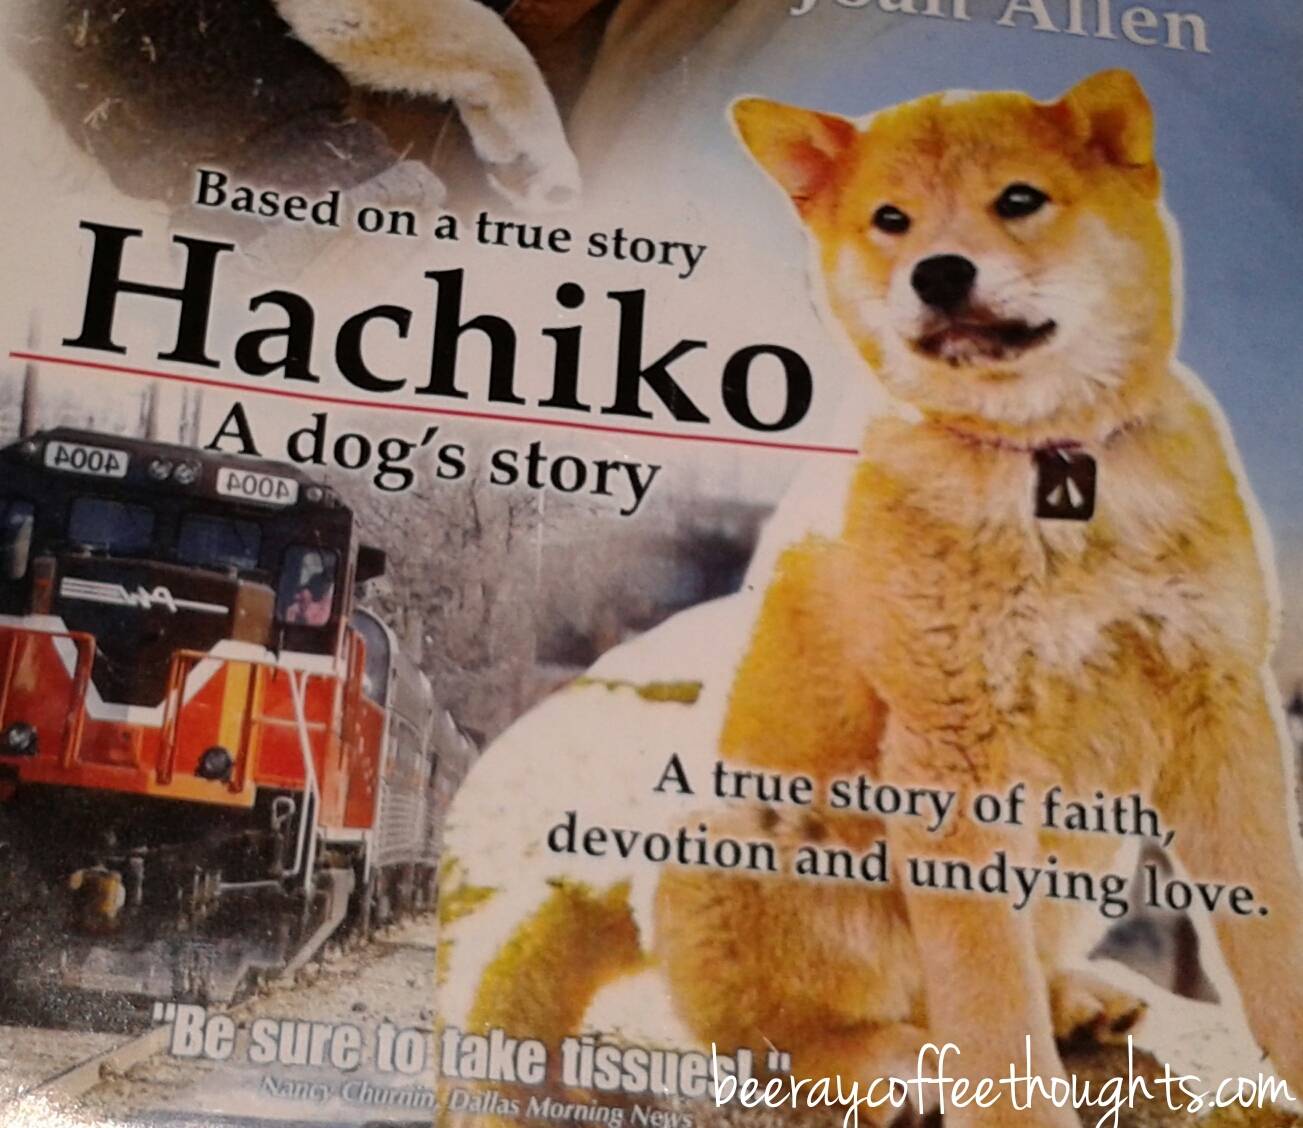 Хатико - биография персонажа, "самый верный друг", фото, интересные факты - 24сми